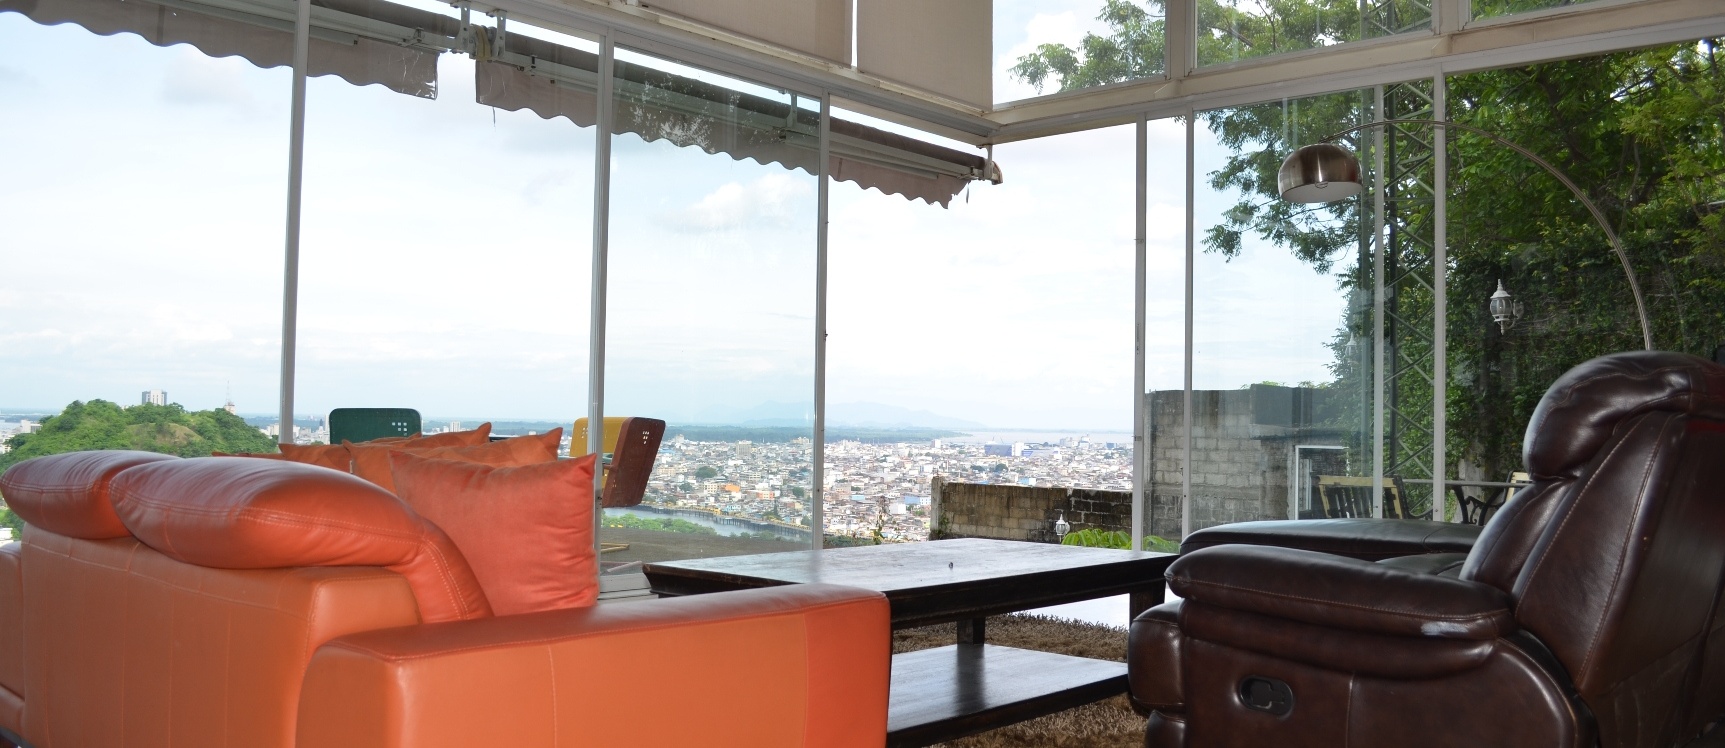 GeoBienes - Casa en venta en urbanización Bellavista sector centro sur   - Plusvalia Guayaquil Casas de venta y alquiler Inmobiliaria Ecuador